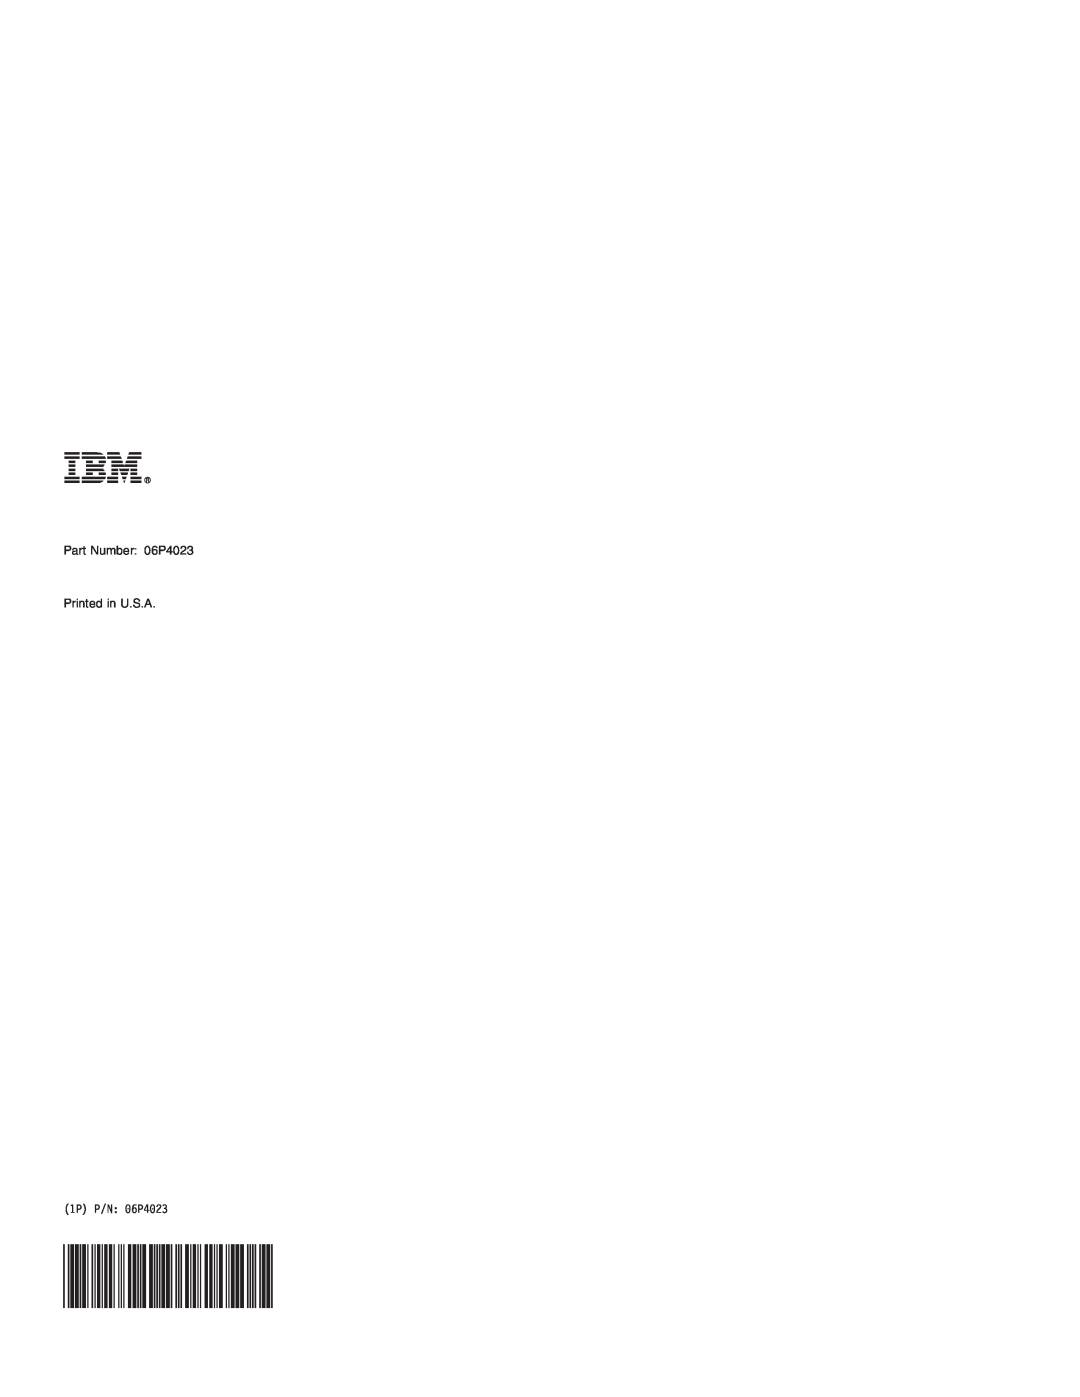 IBM LAN 2100 3B manual 1P P/N 06P4023 